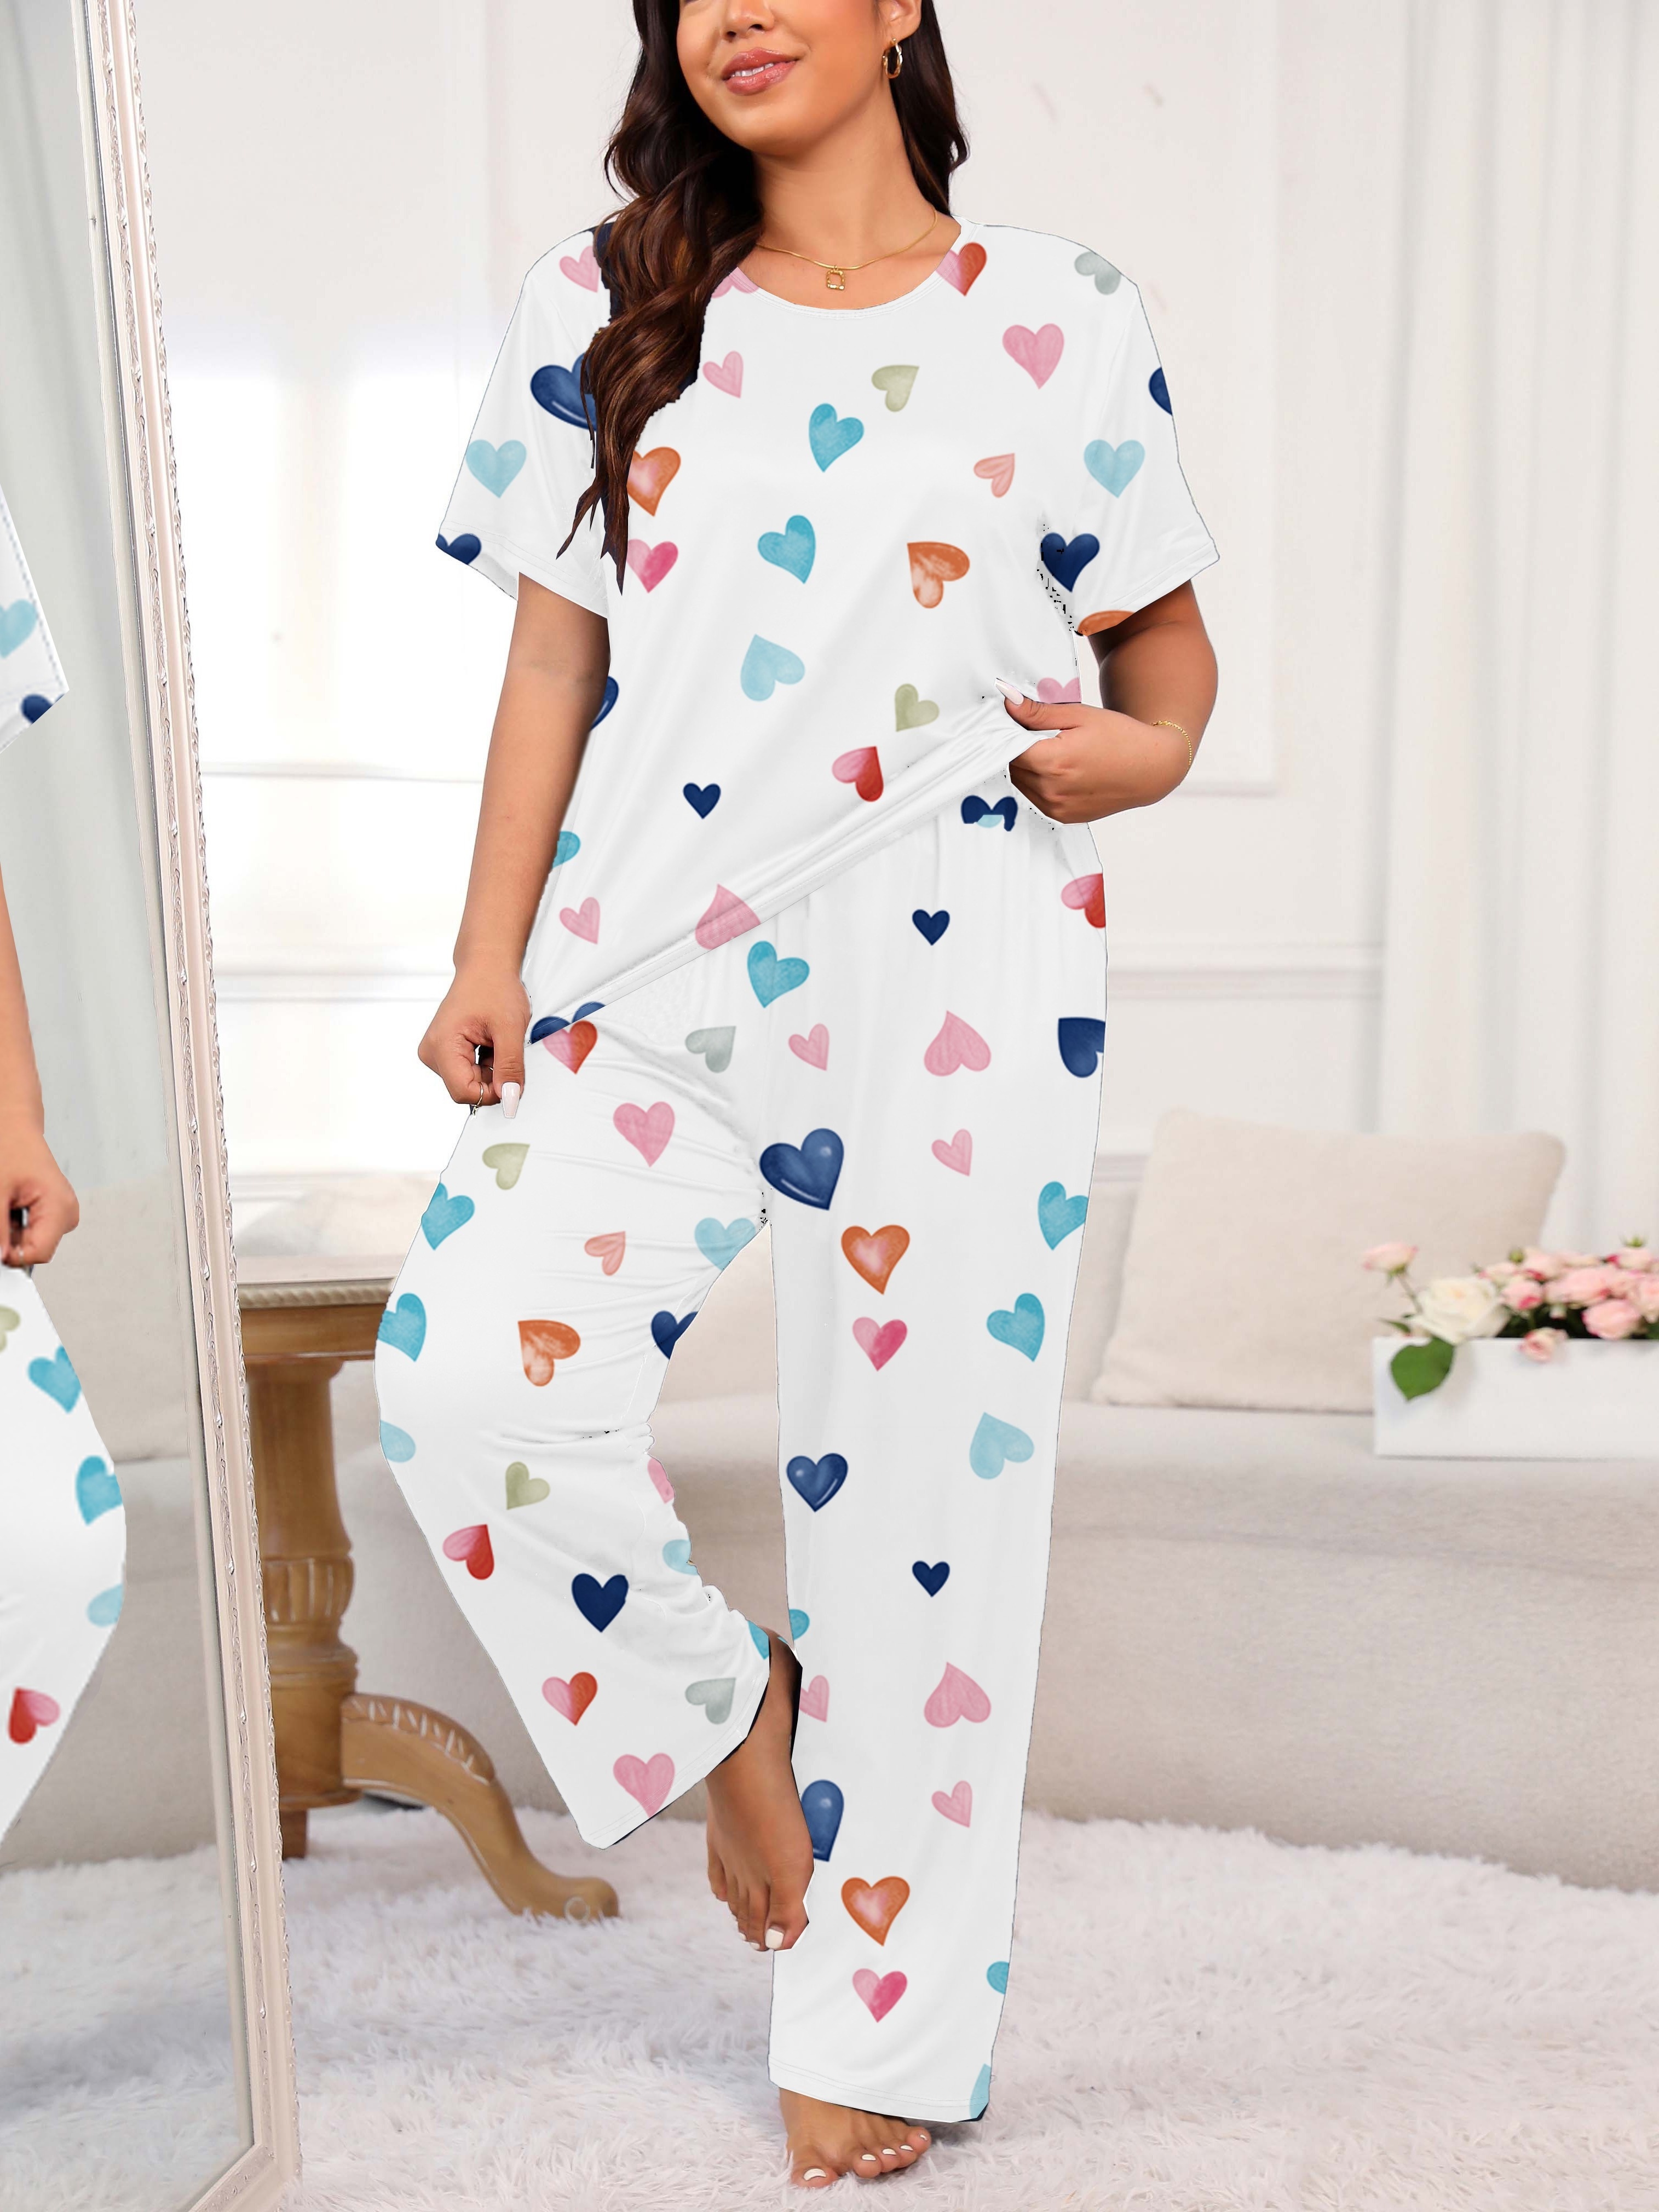 Compra online de Pijamas femininos plus size, 9 cores, vestido de